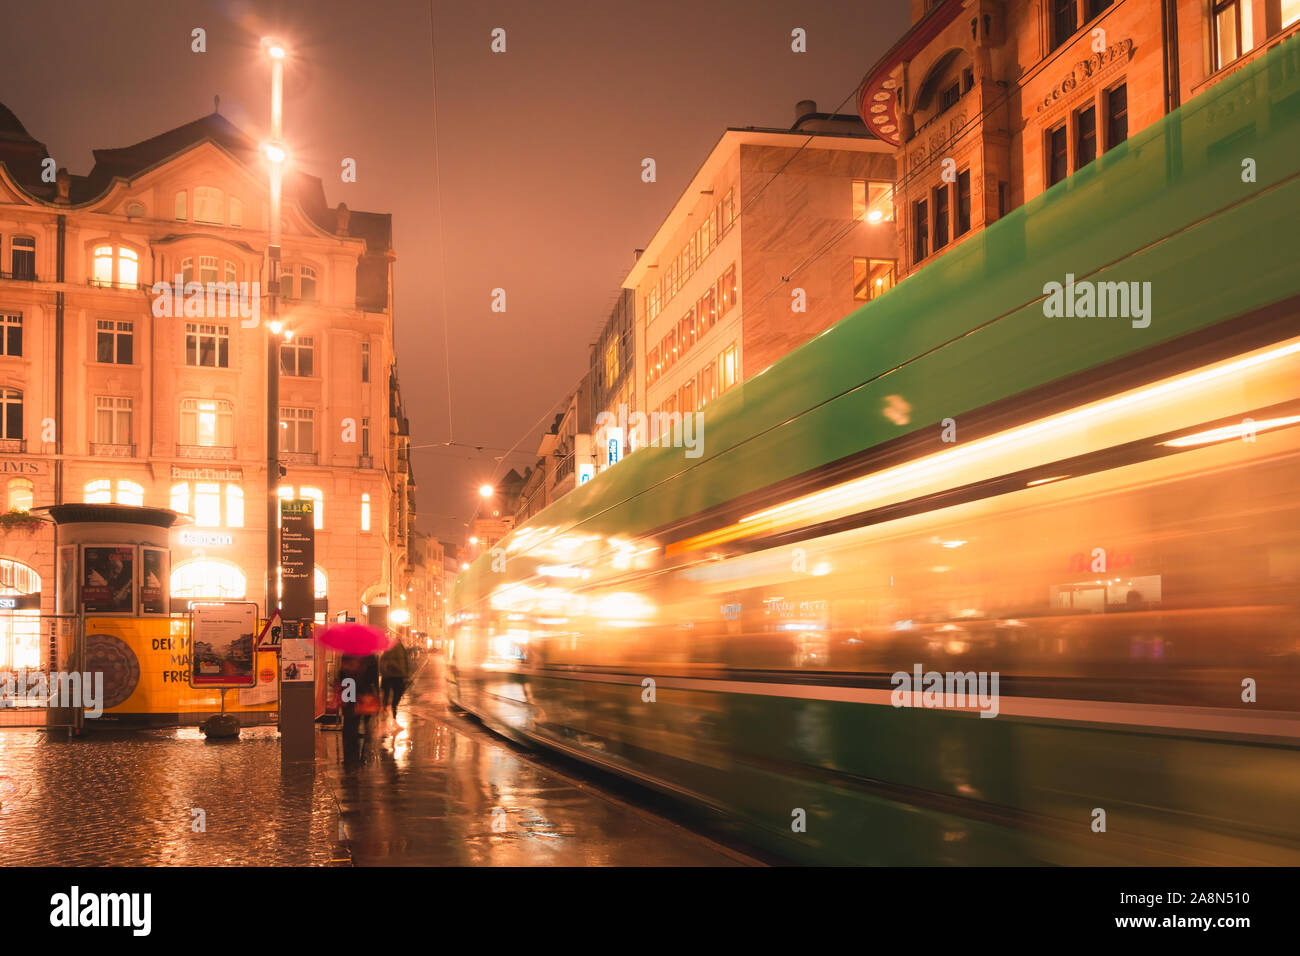 Escena nocturna urbana en una noche lluviosa con tranvía en movimiento y luces brillantes, Basilea Marketplatz downtown, Suiza. Foto de stock